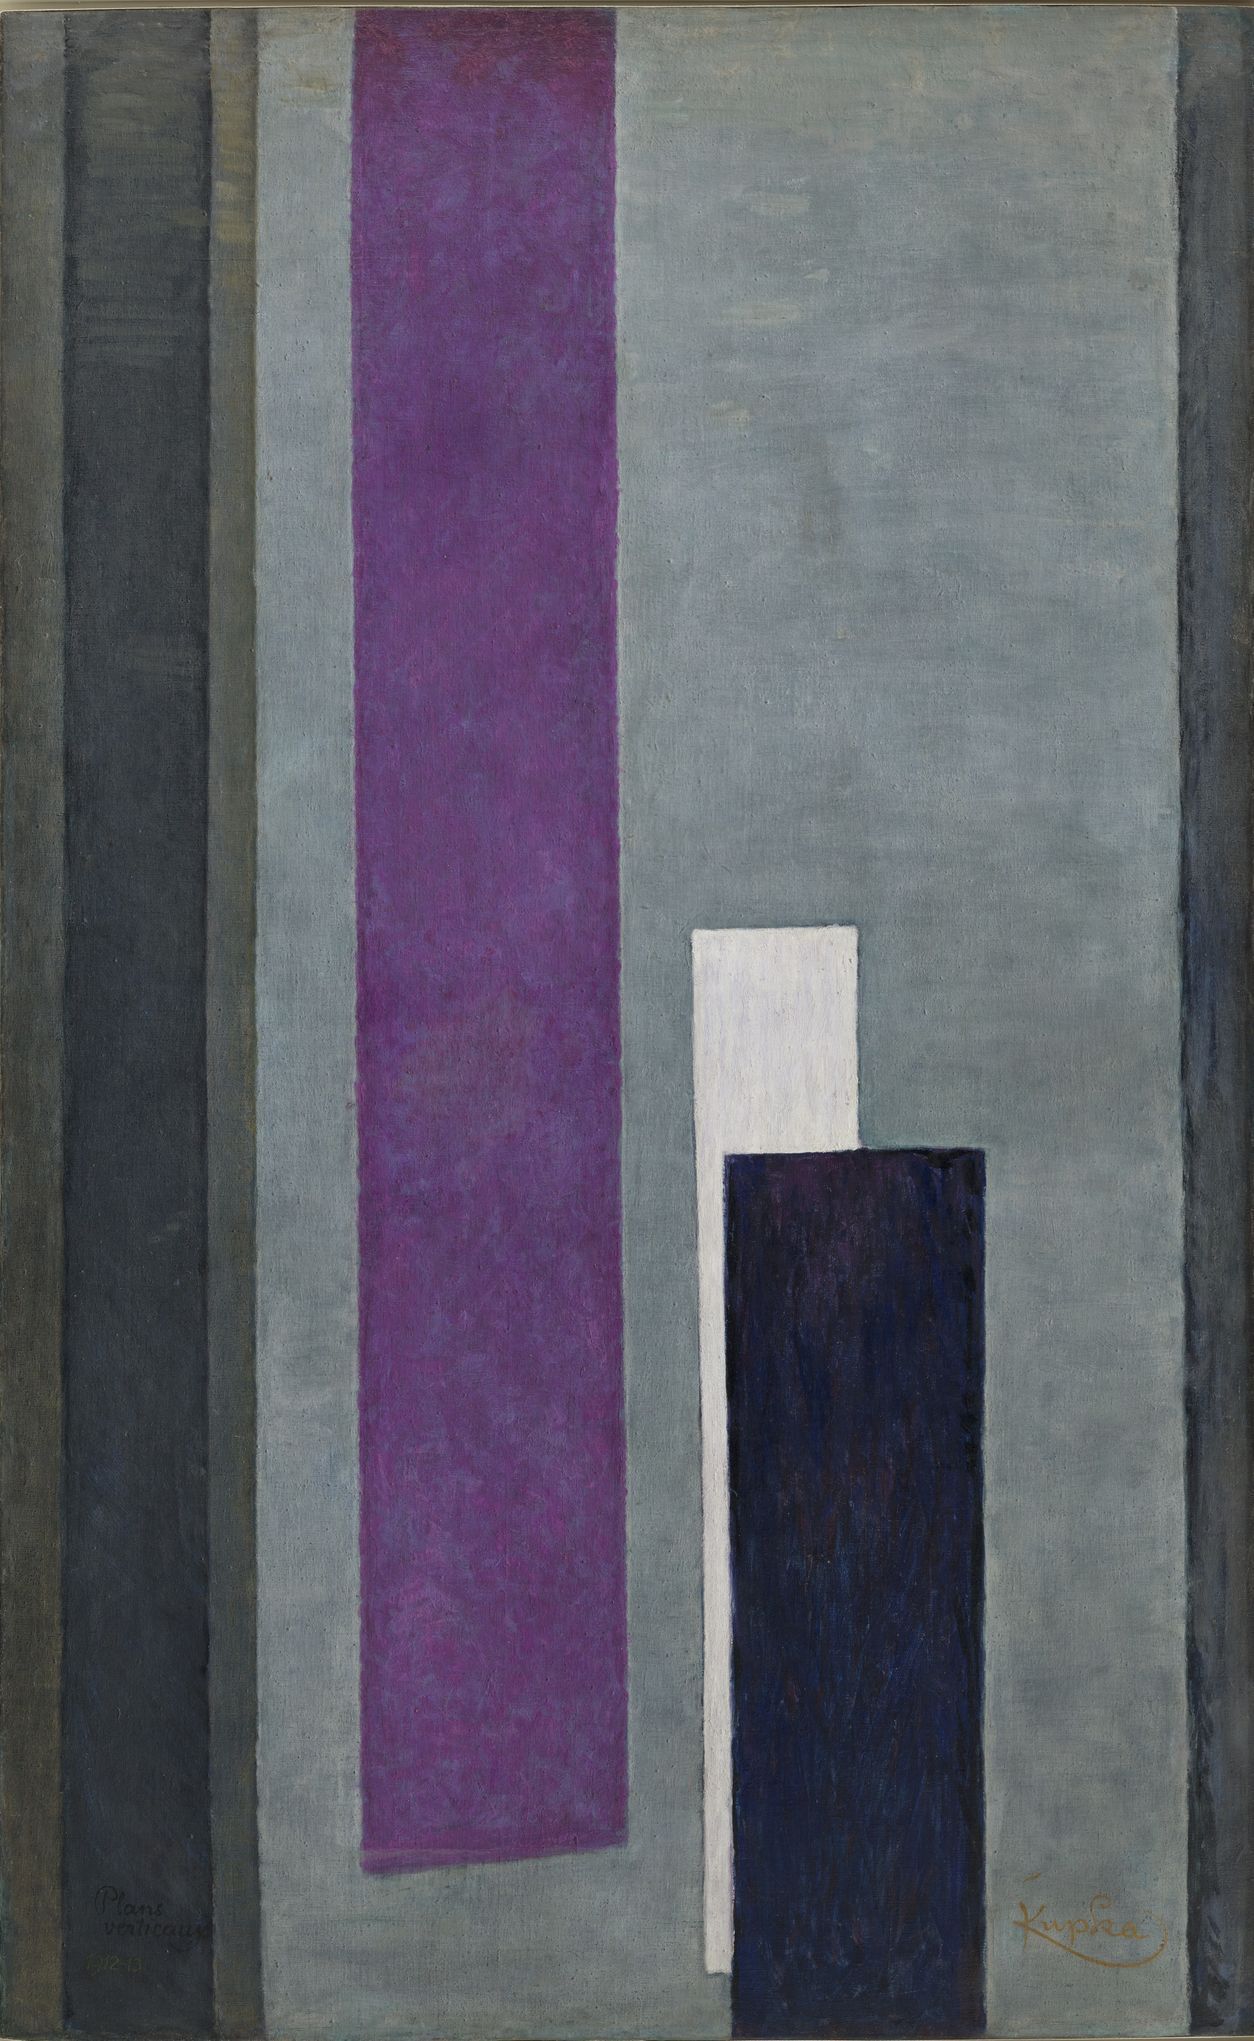 František Kupka: Vertikální plány III, 1912–1913, olej, plátno, 200 x 118 cm